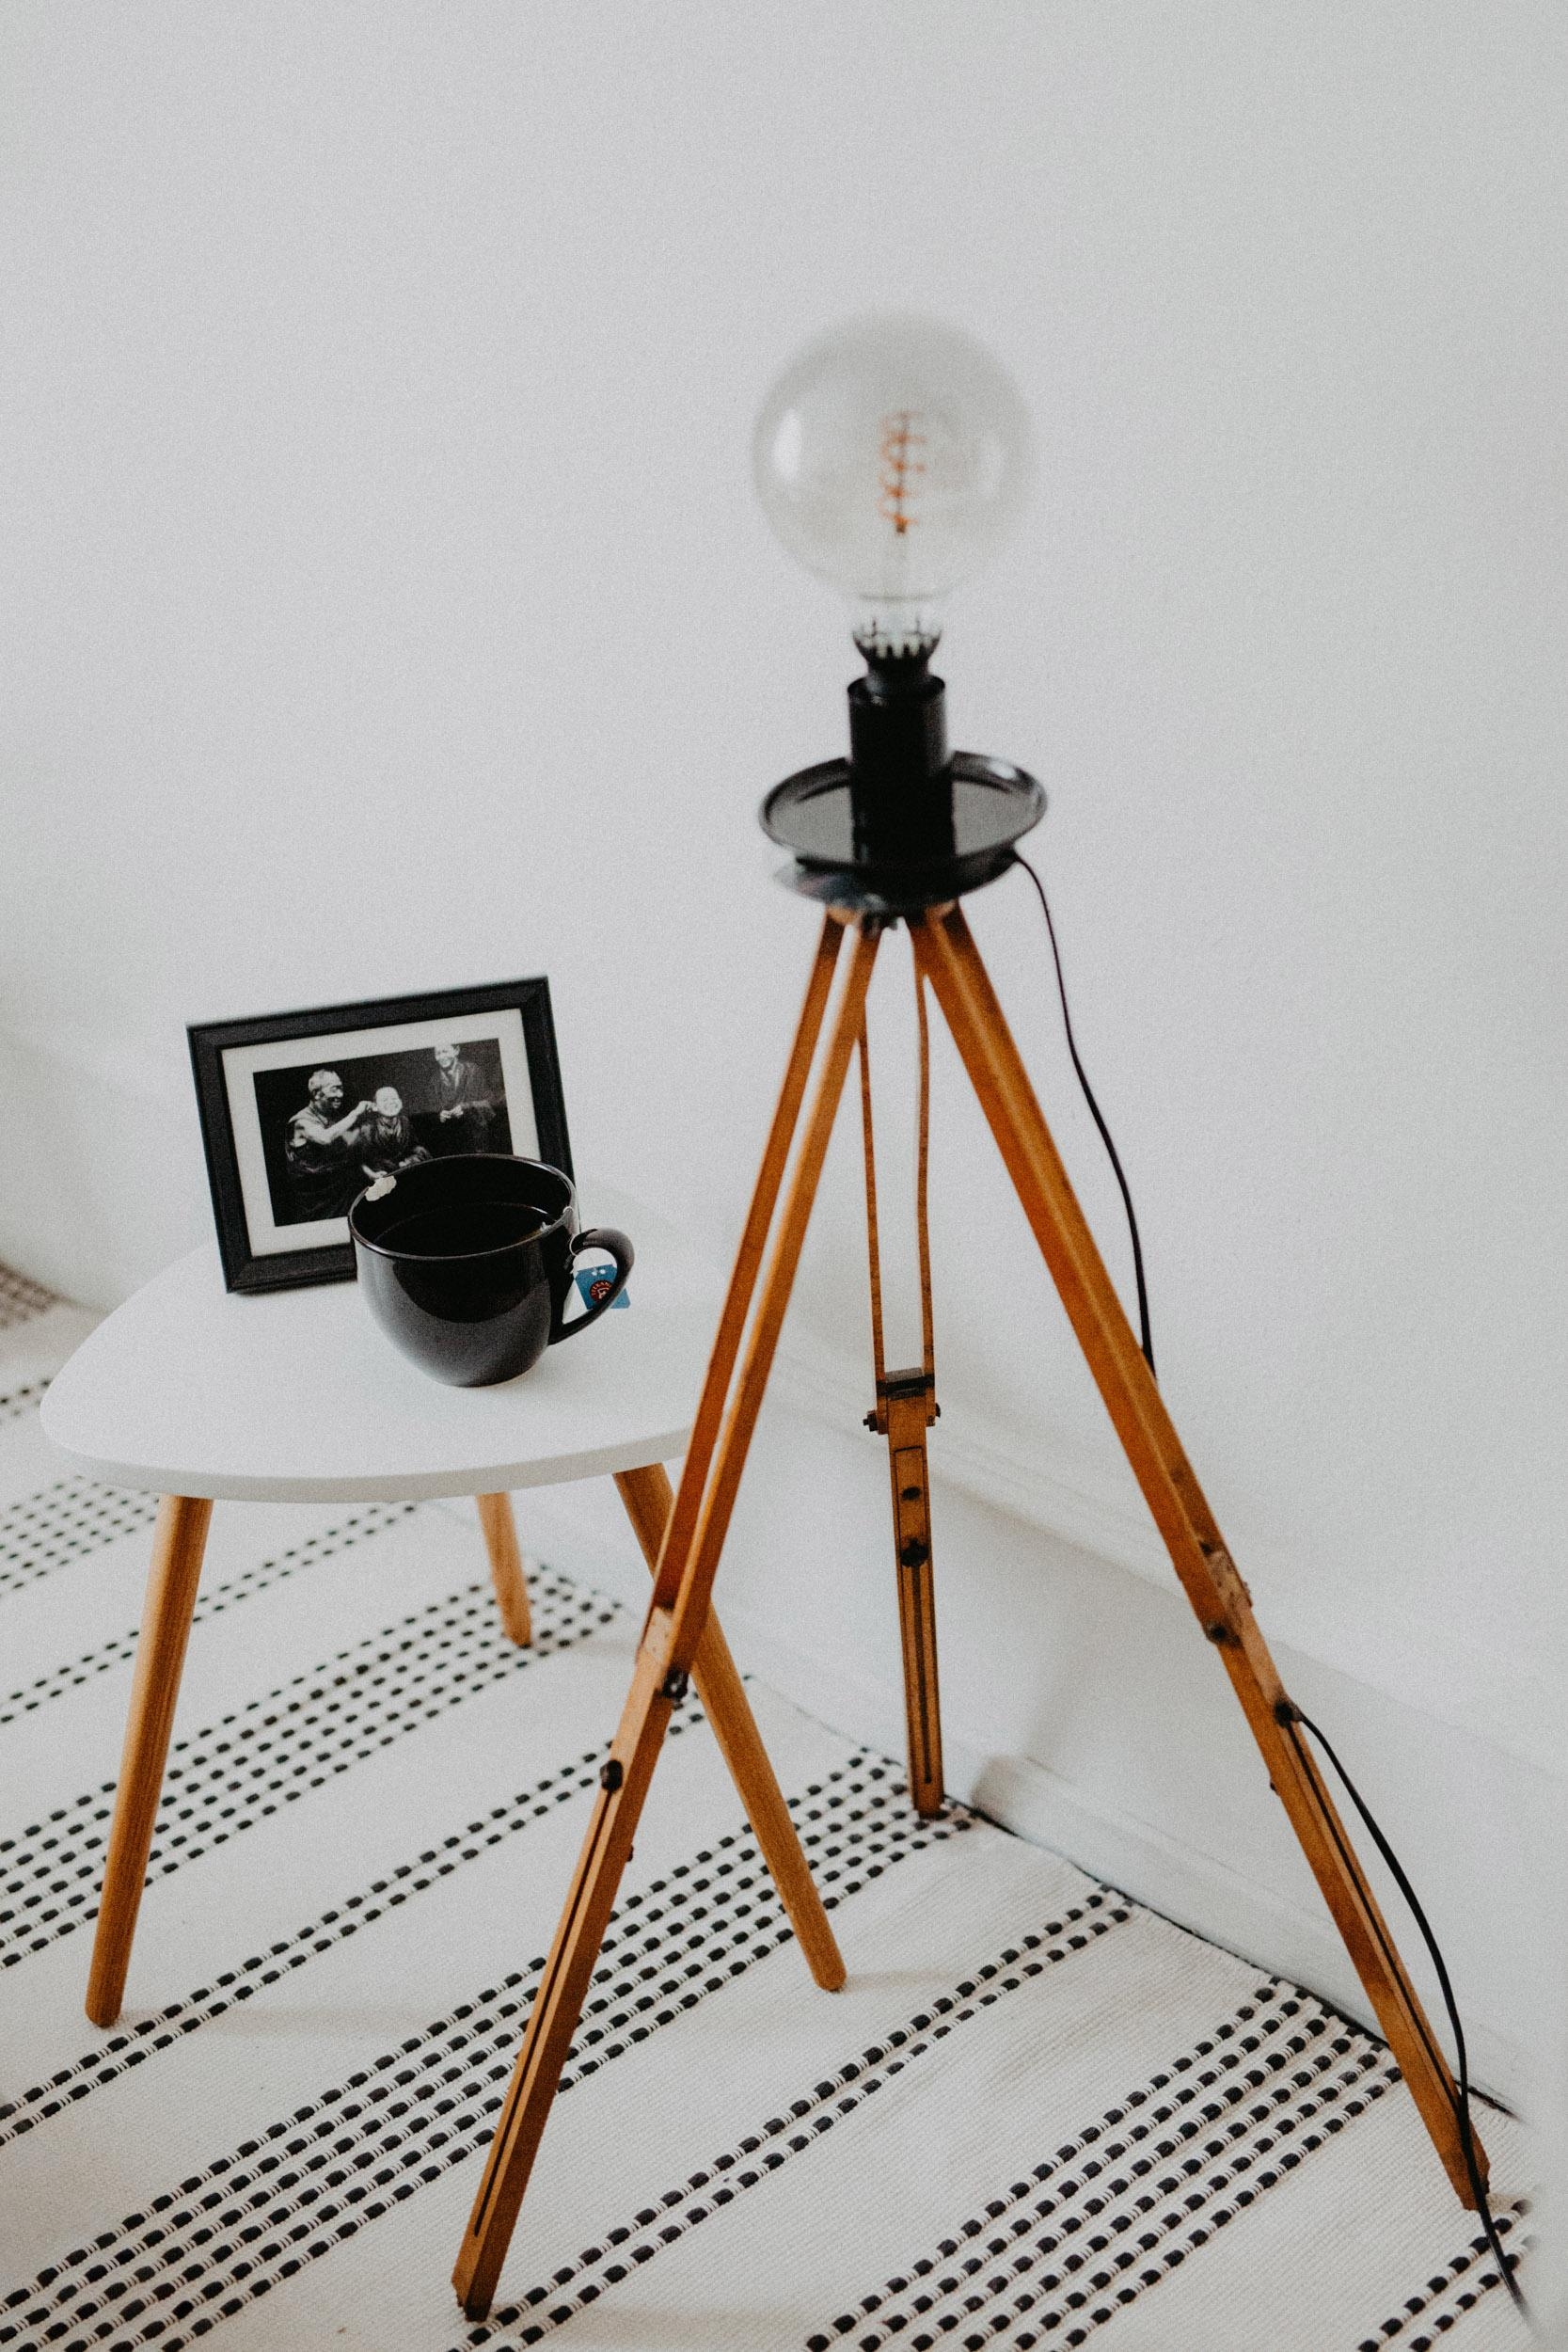 Meine DIY Lampe hat endlich ein Plätzchen gefunden :-) #diy #homedecor #lampe #selbstgebaut #retro 